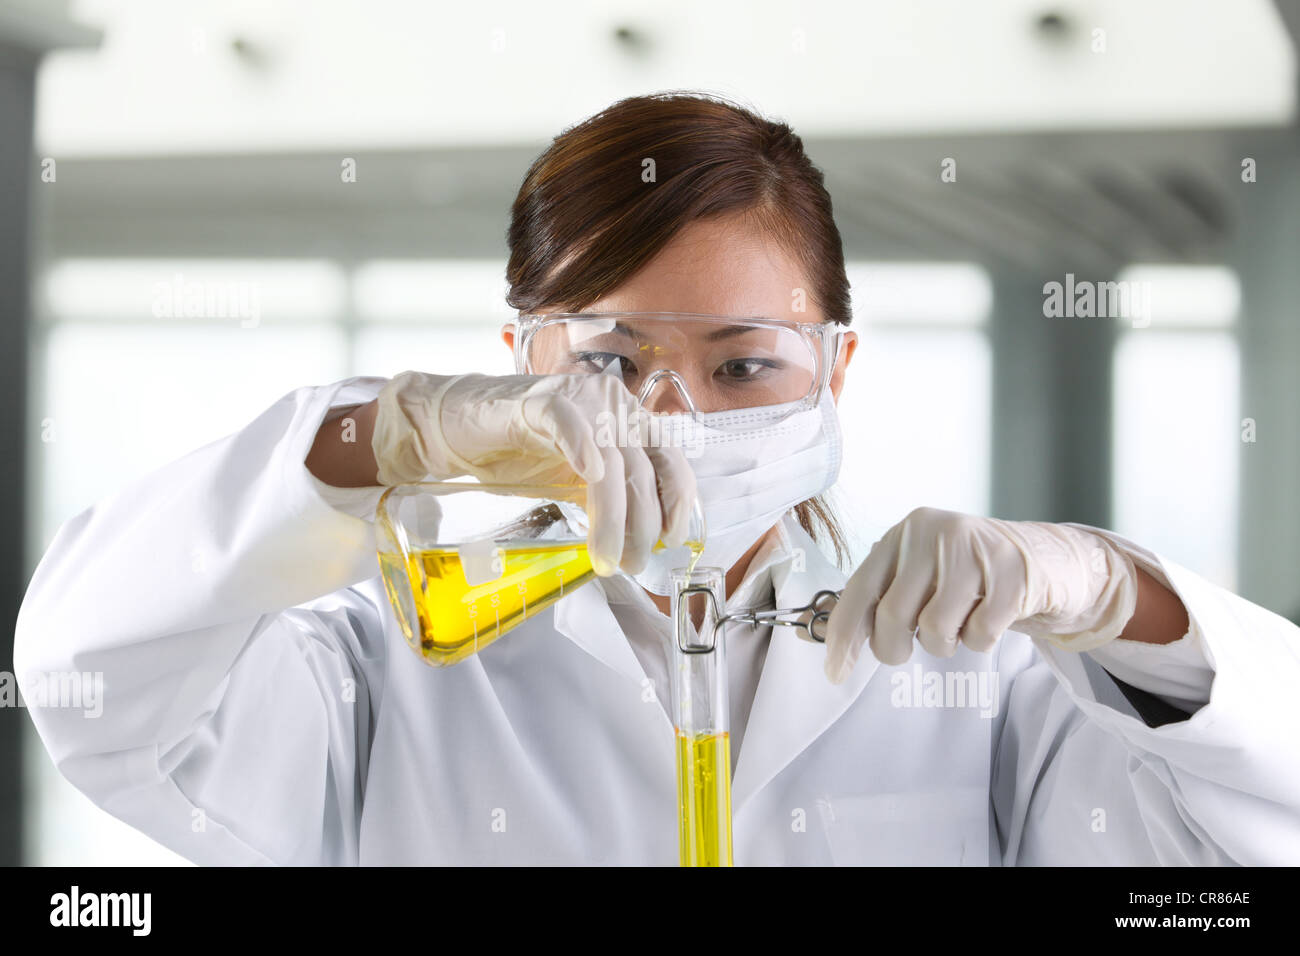 Retrato de un científico analizando una solución. Foto de stock